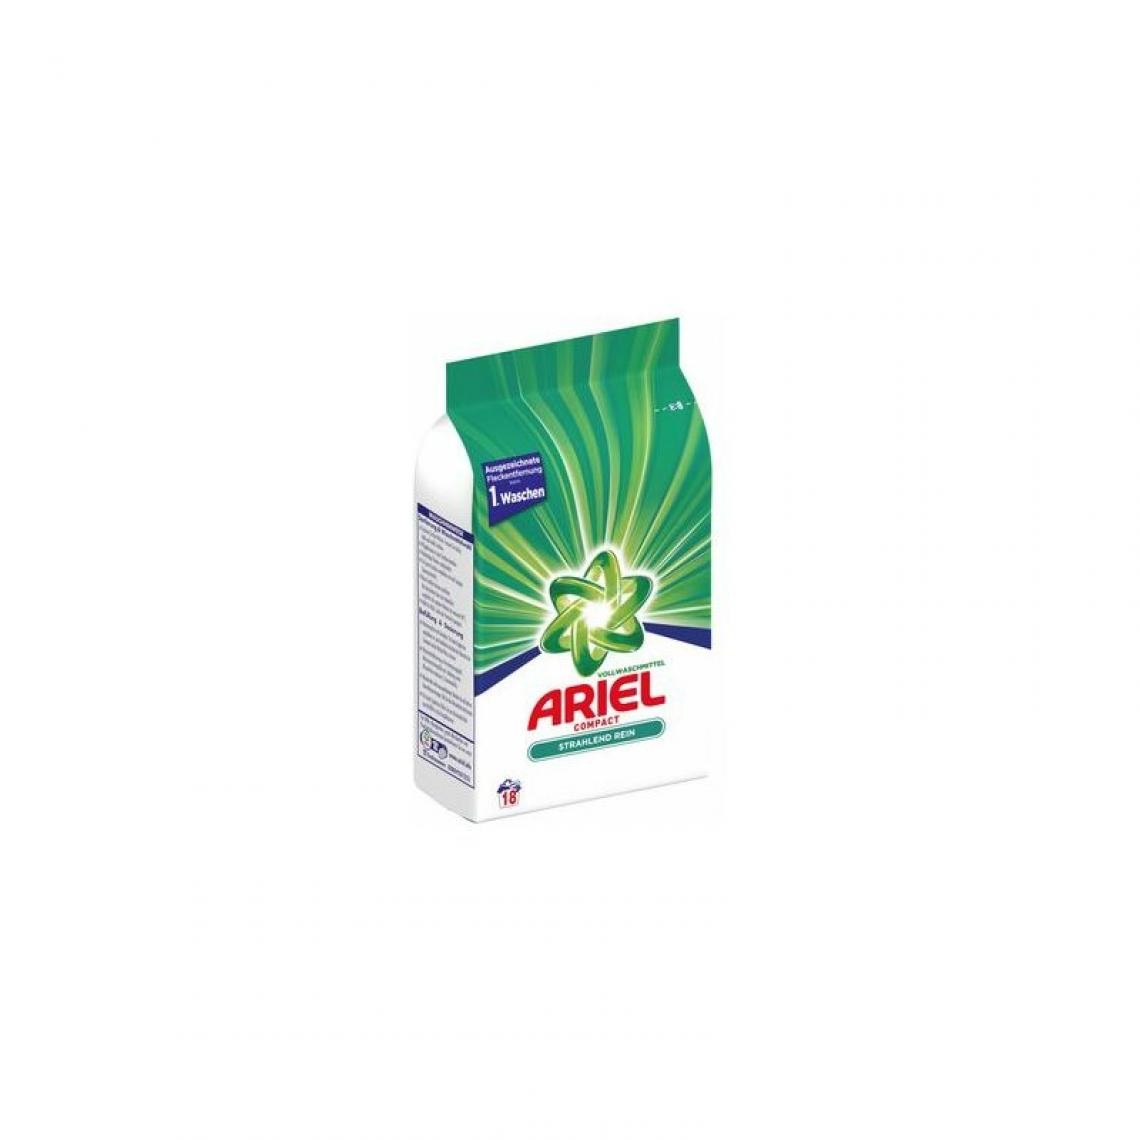 Ariel - ARIEL Compact Lessive poudre Regulier, 18 lavages, 1,35 kg () - Cuisine et ménage